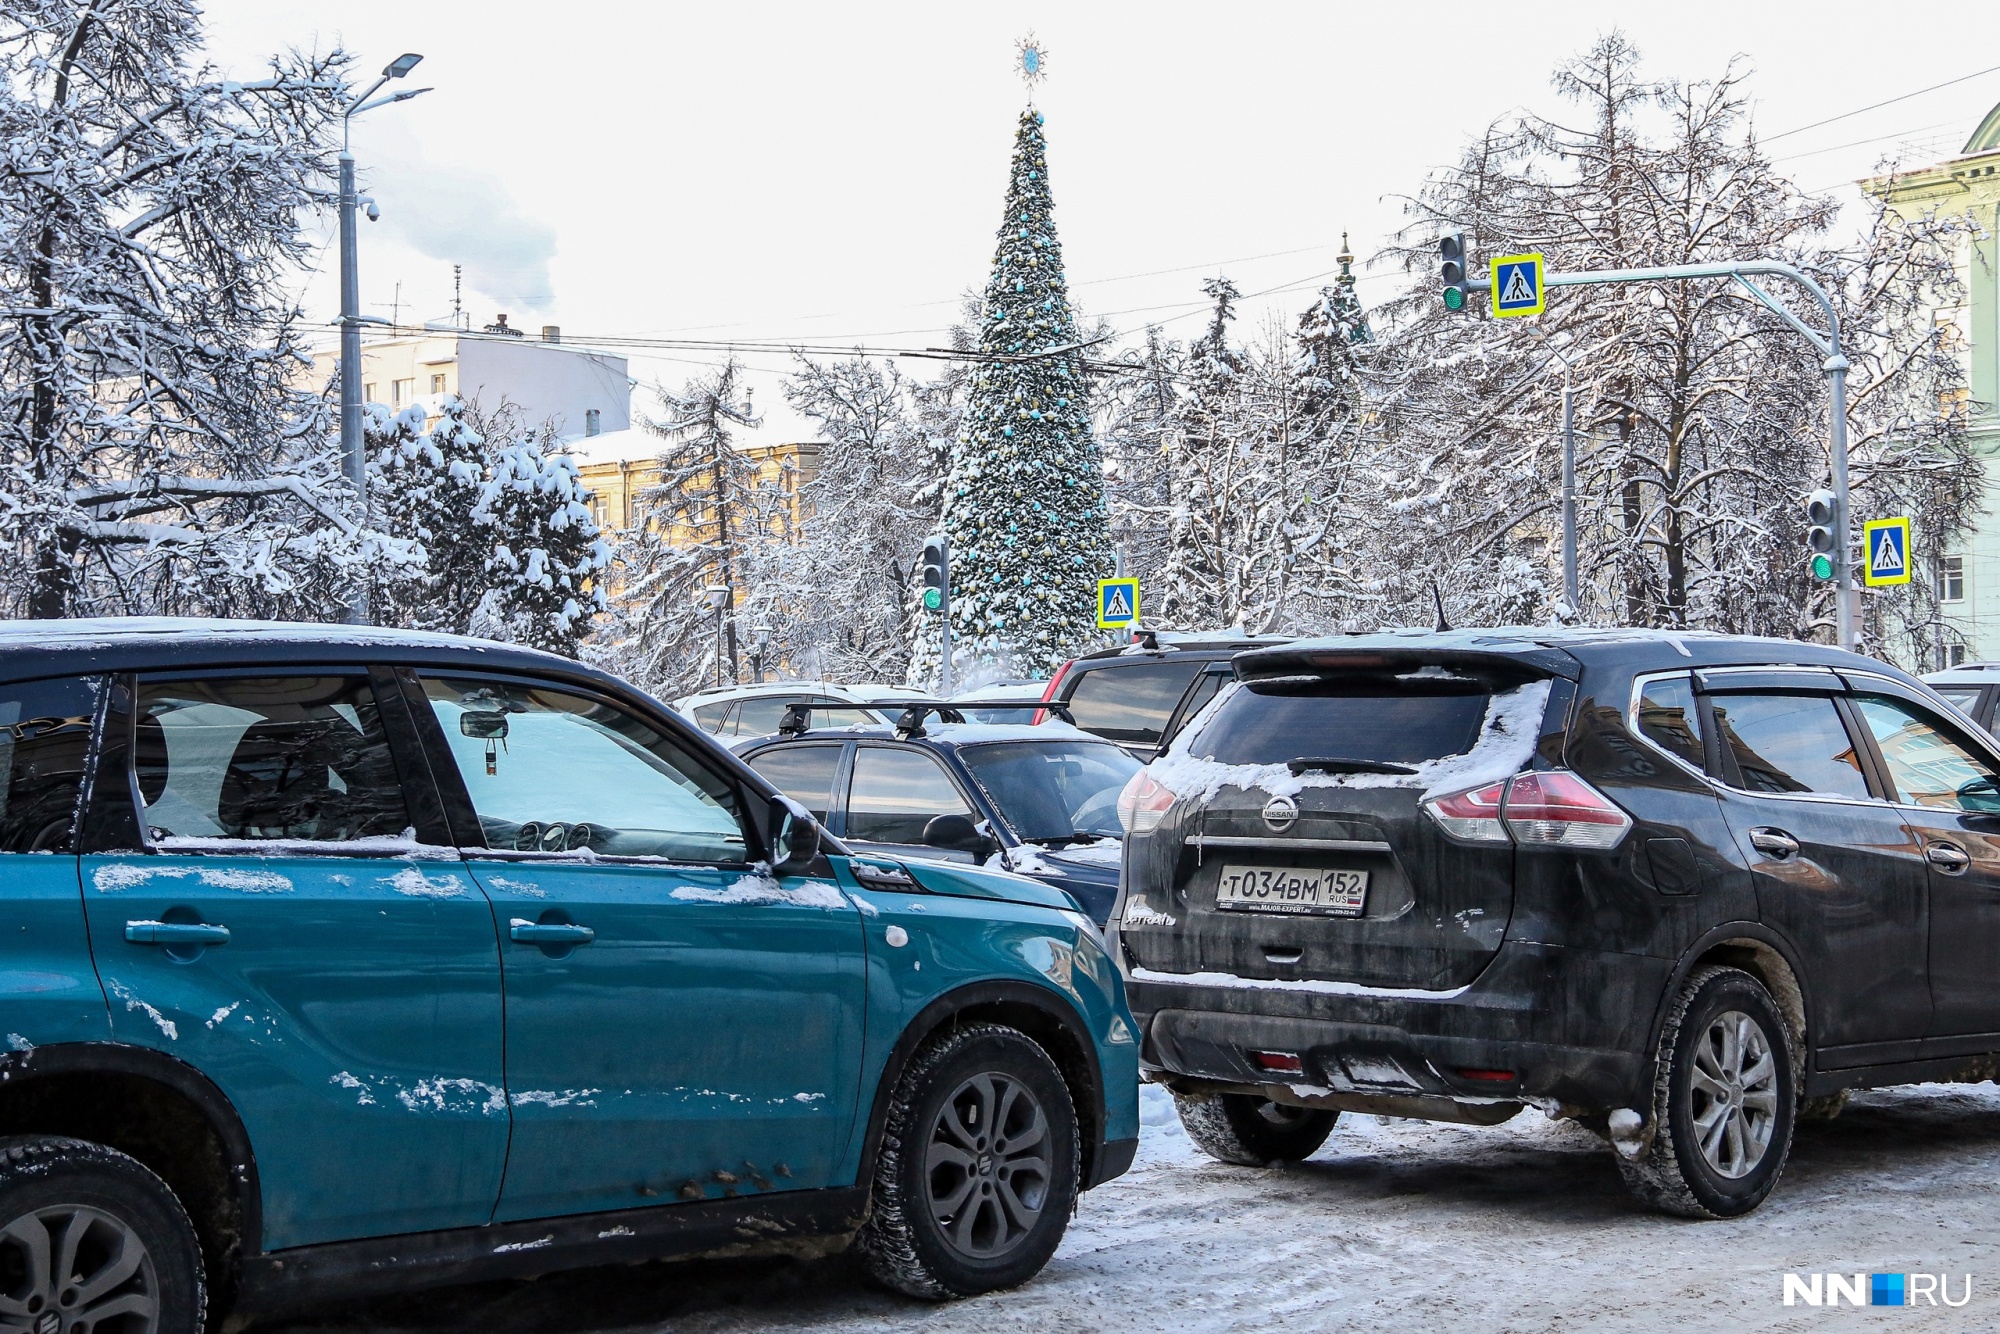 Начался прием заявлений на оформление парковочных разрешений в Нижнем Новгороде